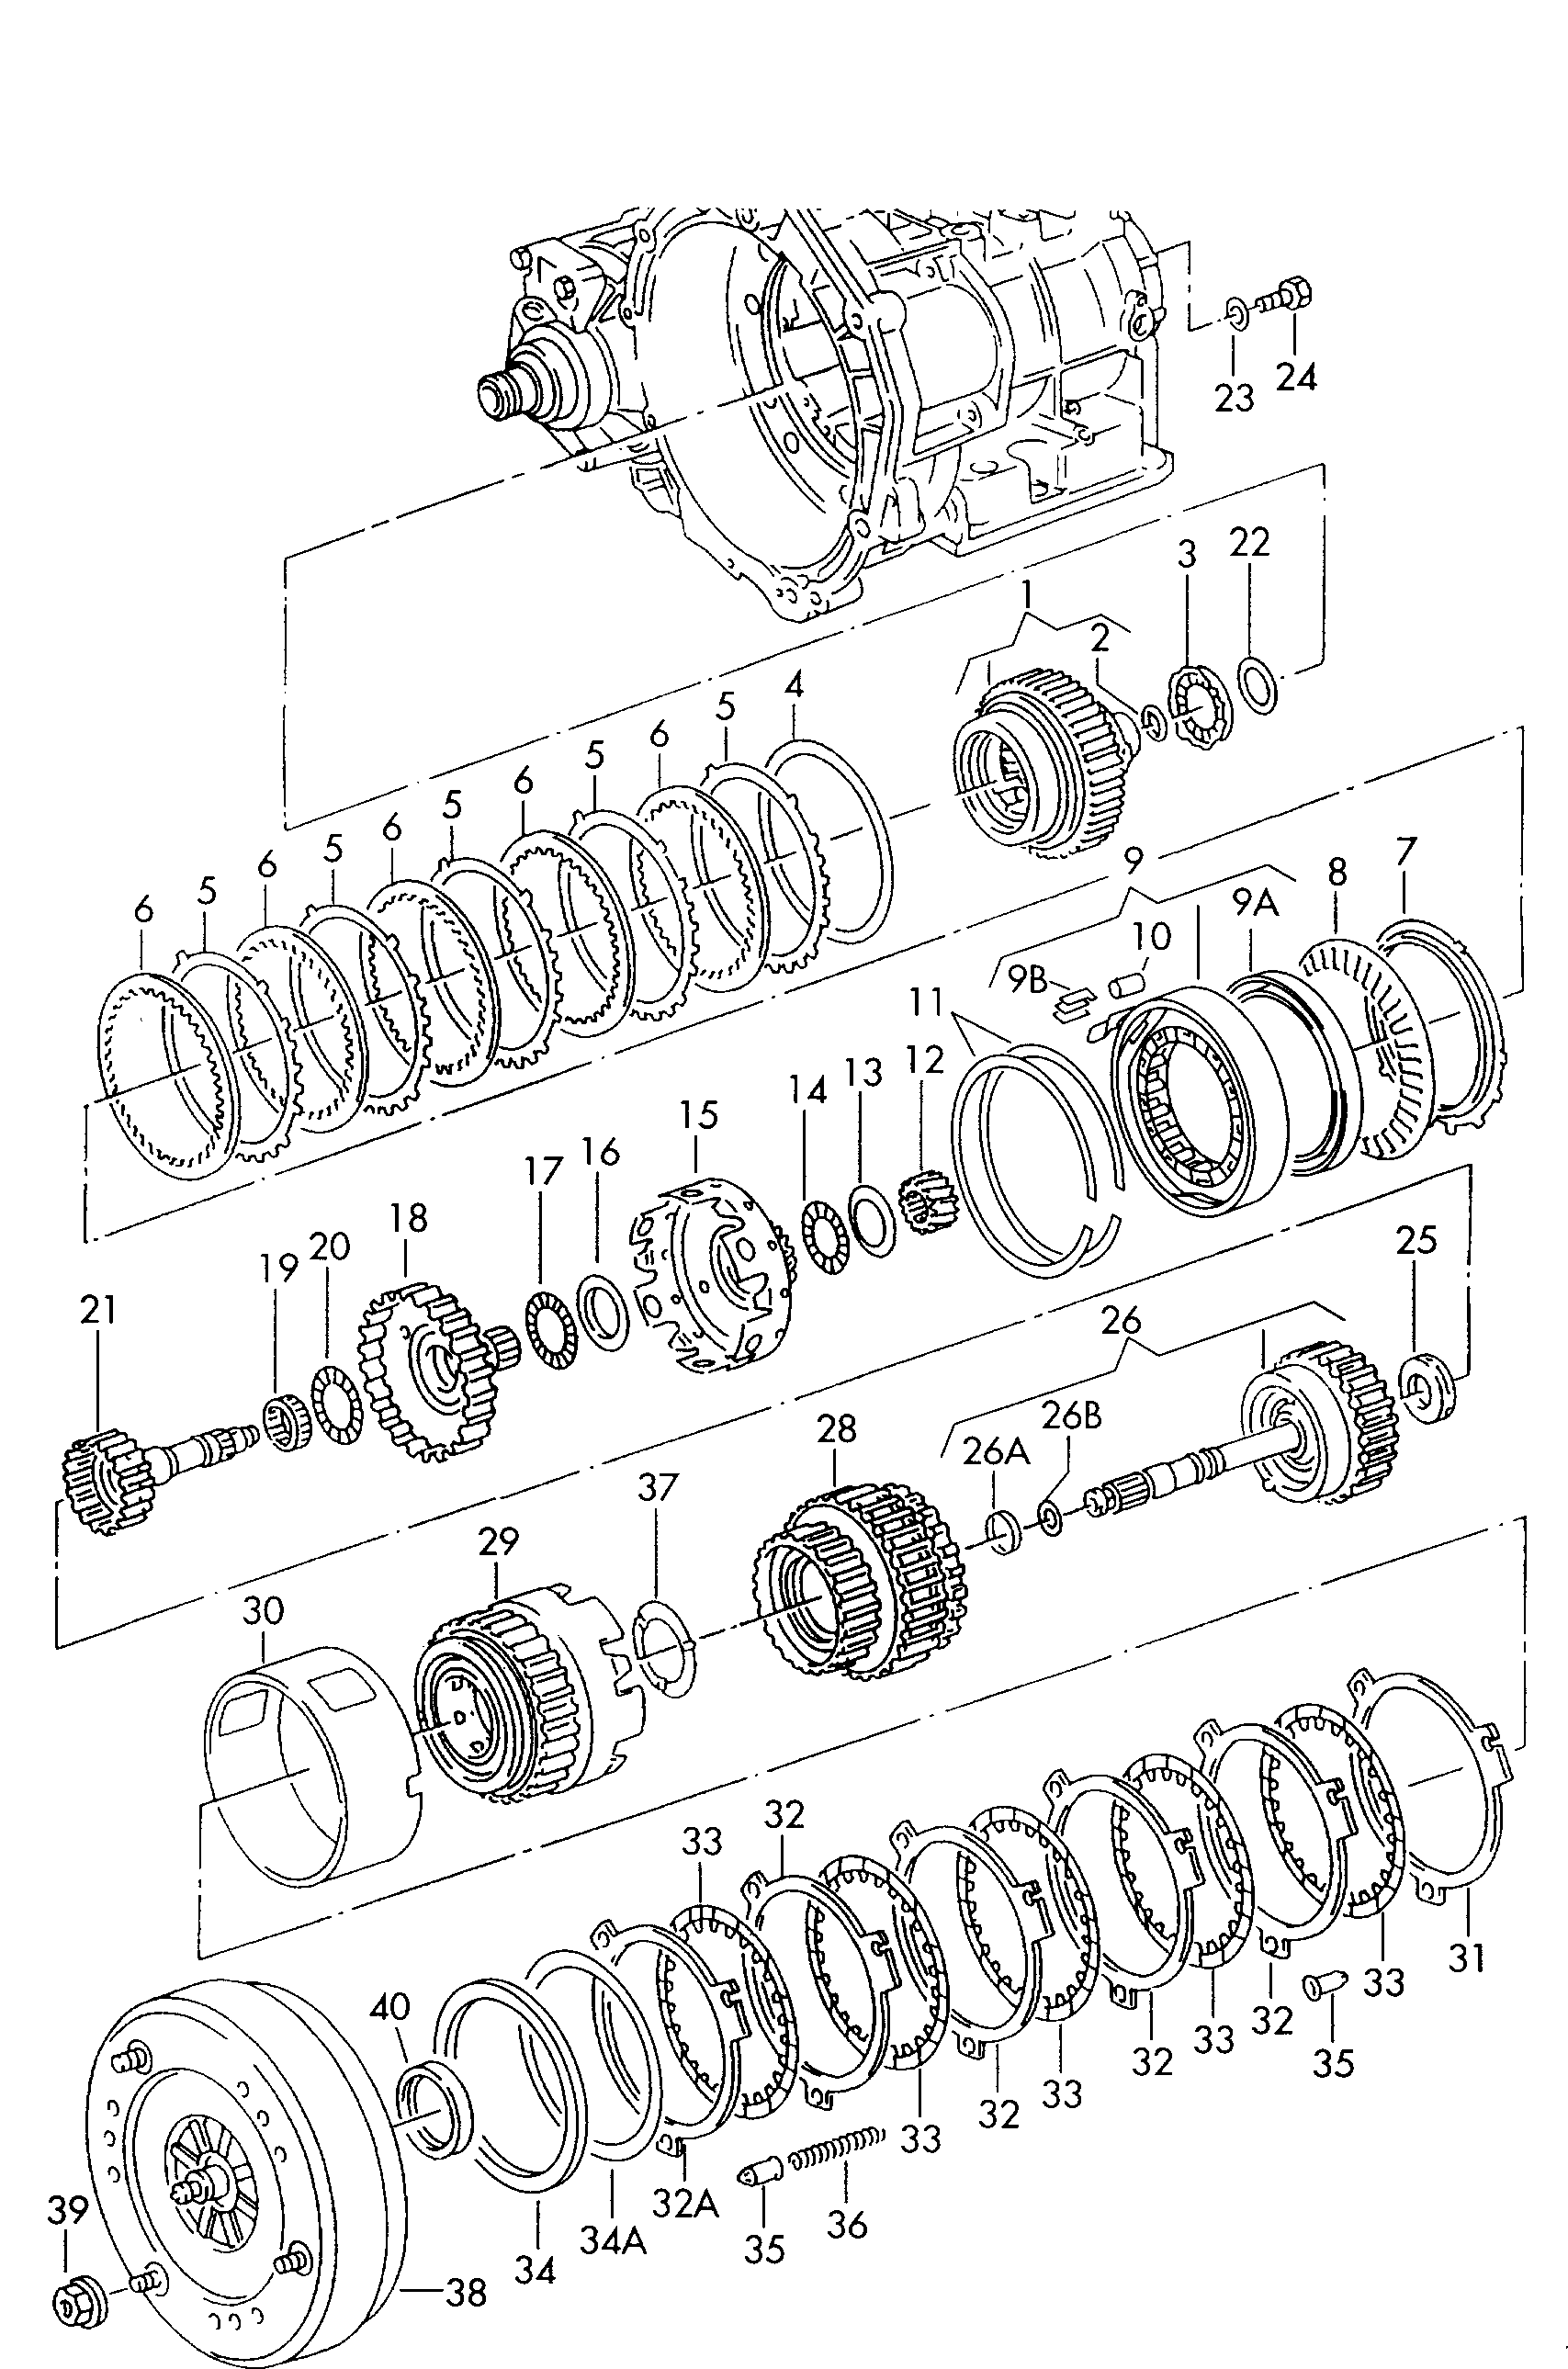 前行-
倒档离合器; 行星齿轮架; 变矩器; 用于四档自动变速器 - Alhambra(AL)  